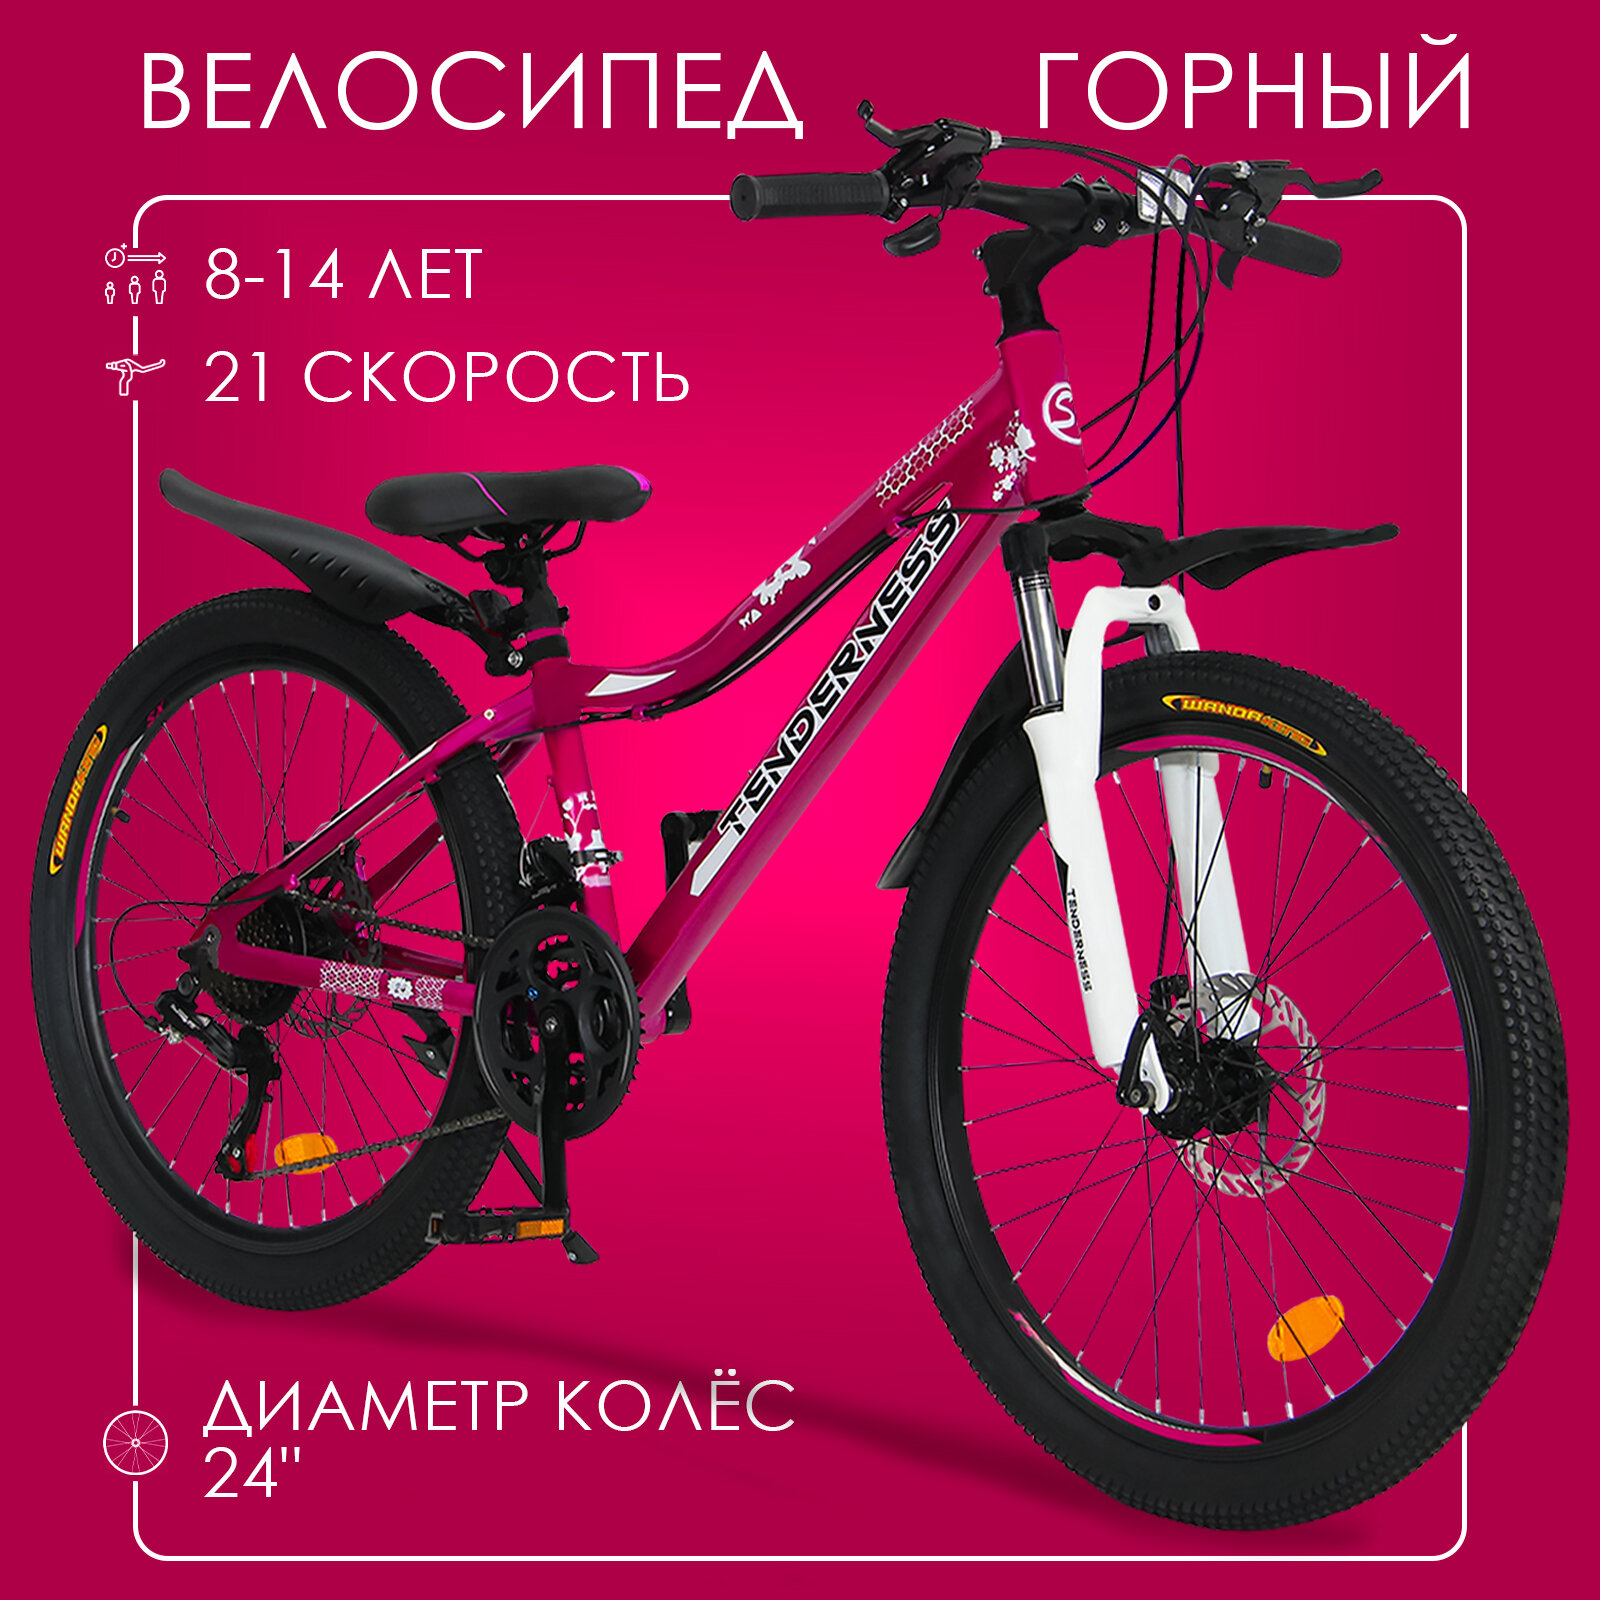 Горный велосипед детский скоростной Tenderness 24" бордовый, 8-14 лет, 21 скорость (Shimano tourney)